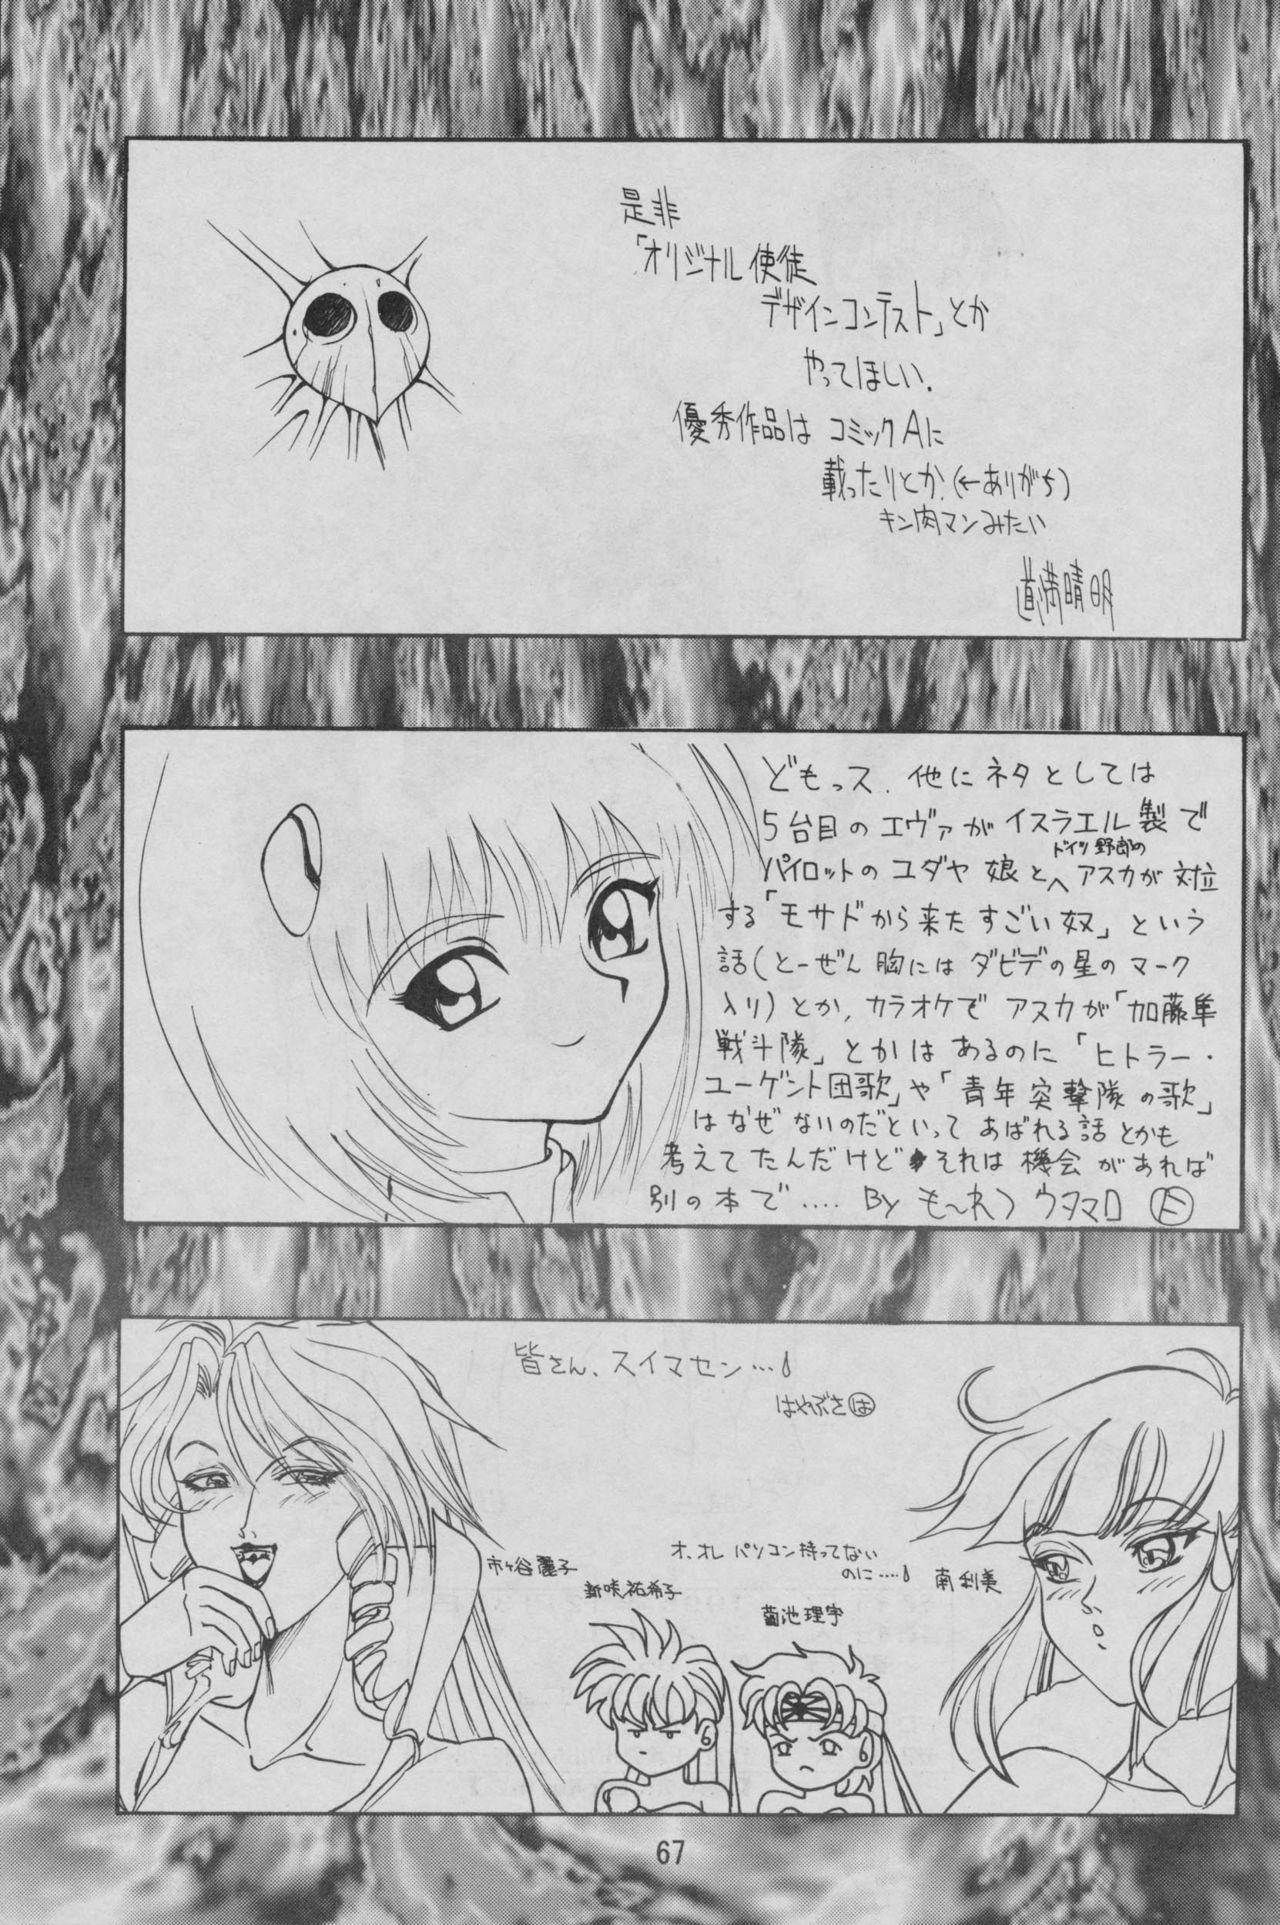 Pussy Lick Comic Dengeki Inuoh - Neon genesis evangelion Mobile suit gundam Gundam zz G gundam Gundam wing Load - Page 69